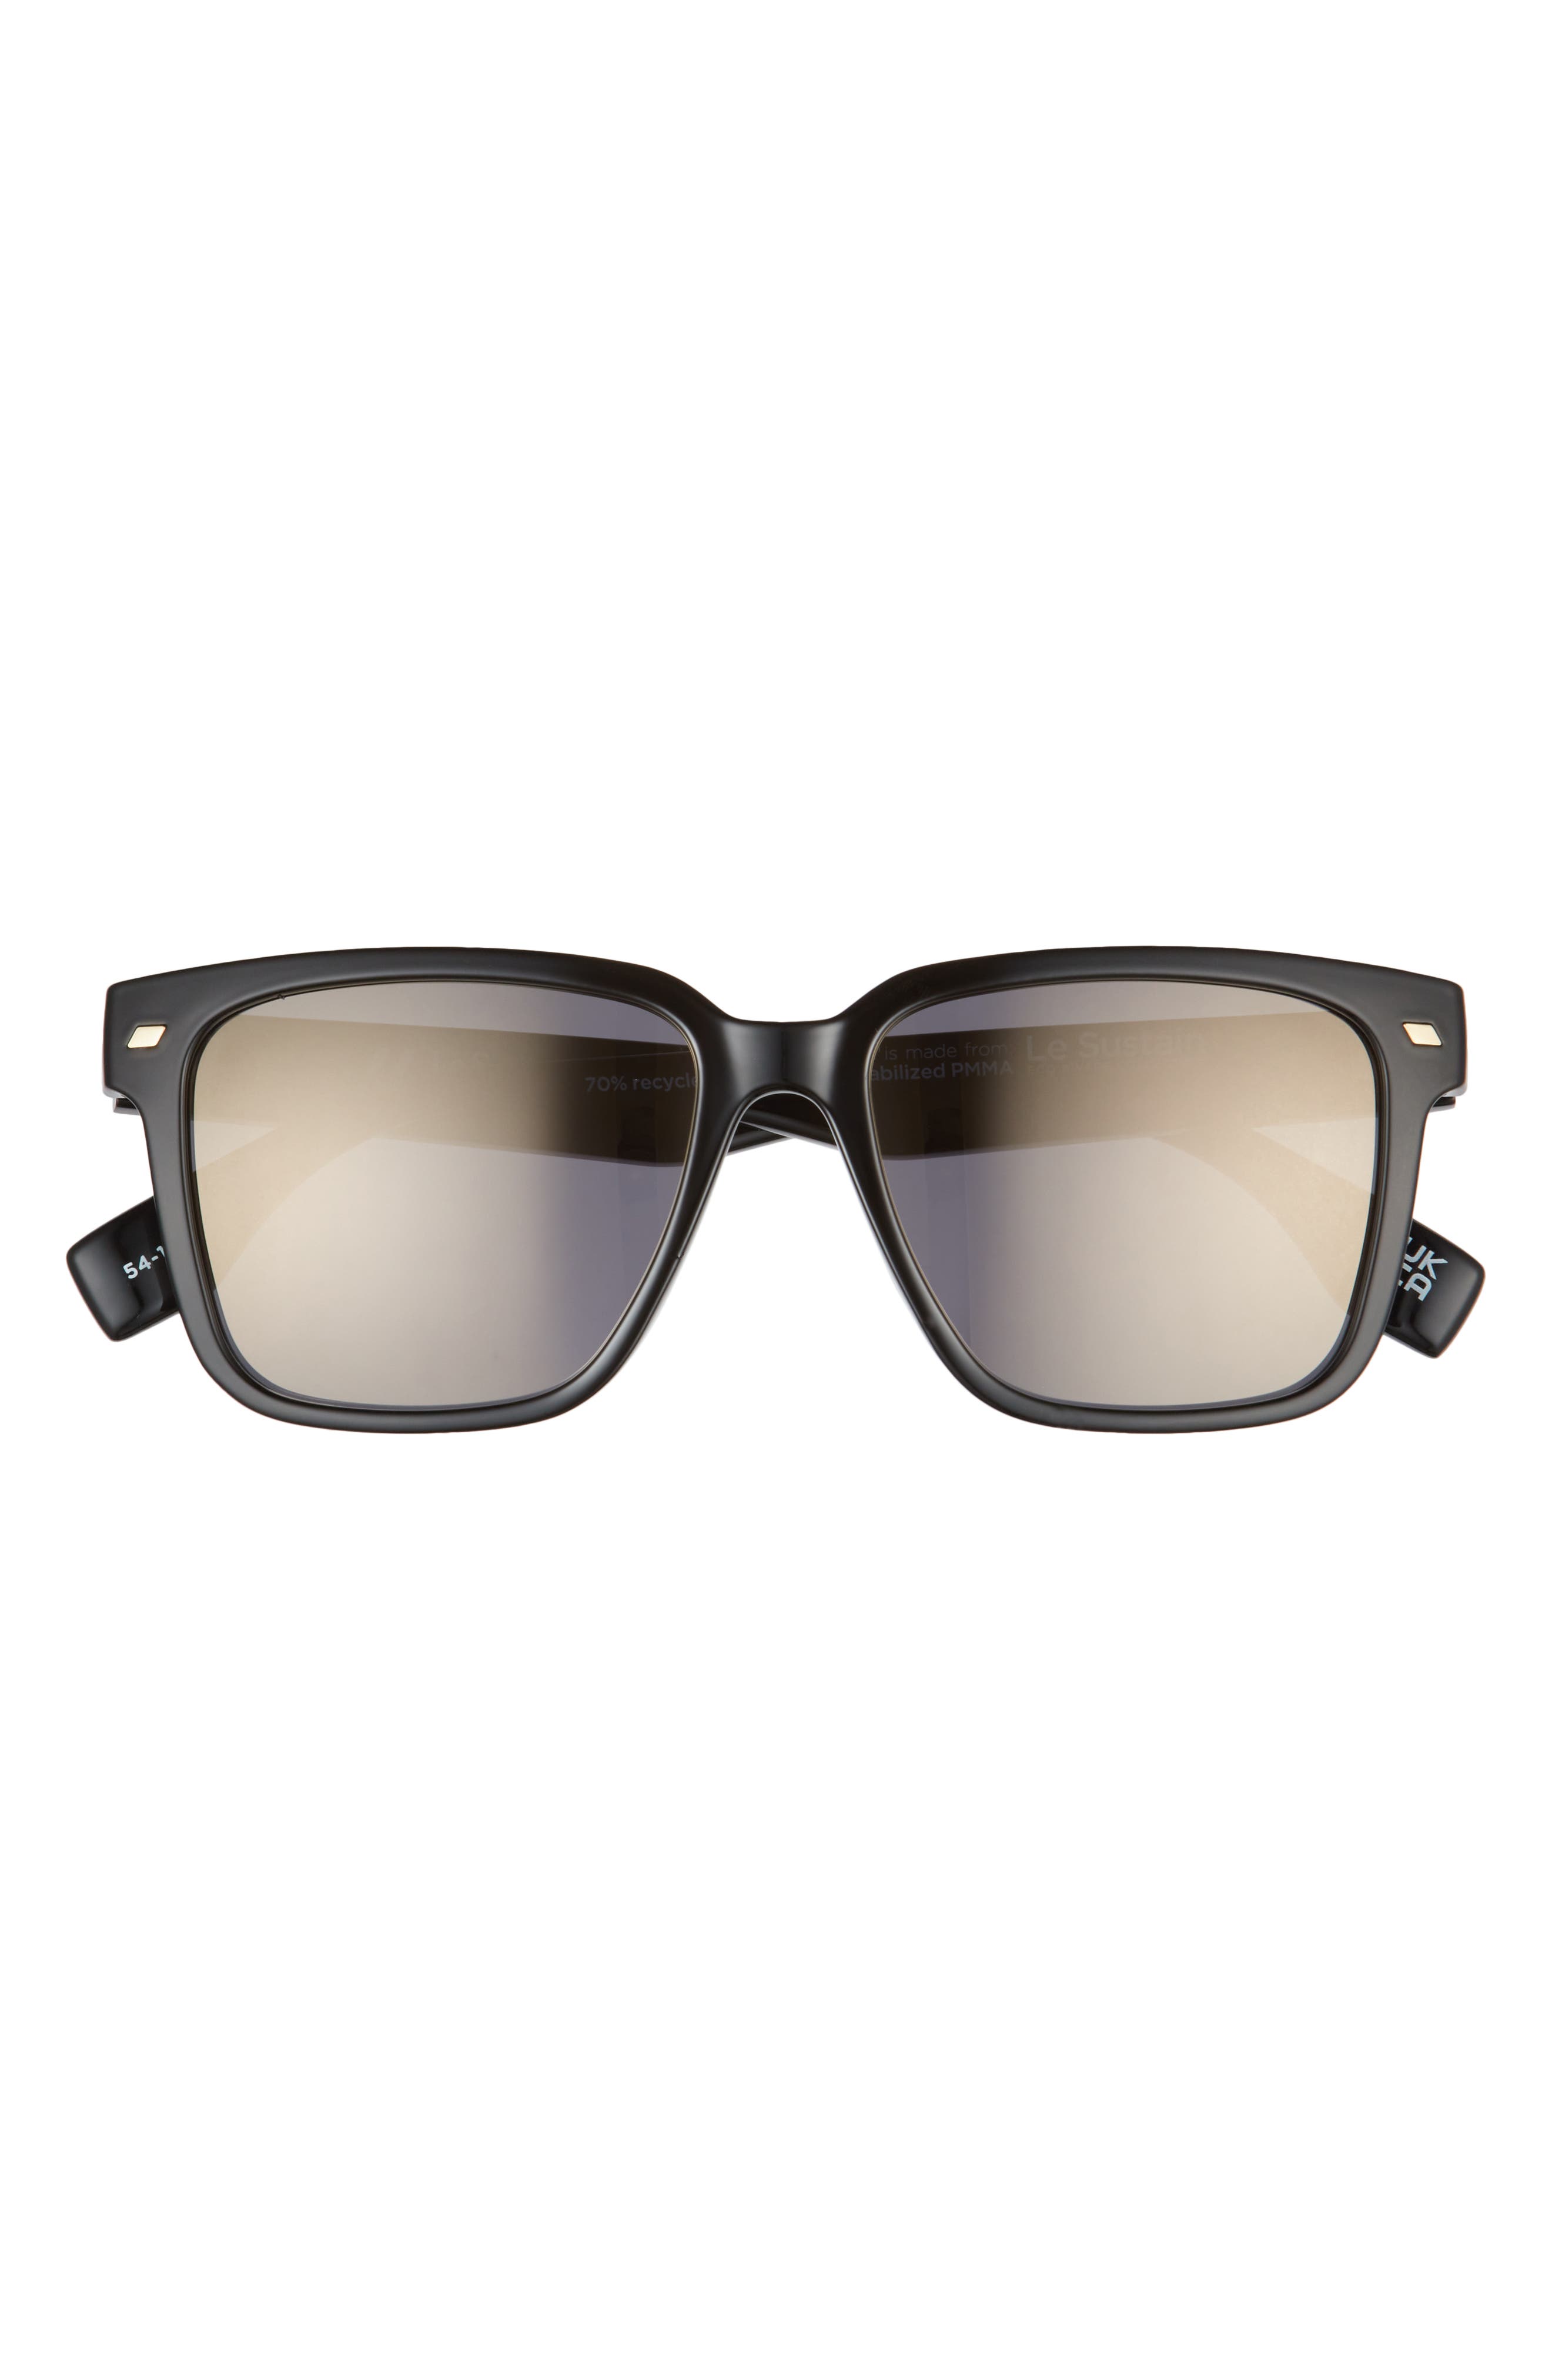 Le Specs Mr. Bomplastic 54mm Square Sunglasses in Black /Smoke Mono Gold Flash at Nordstrom